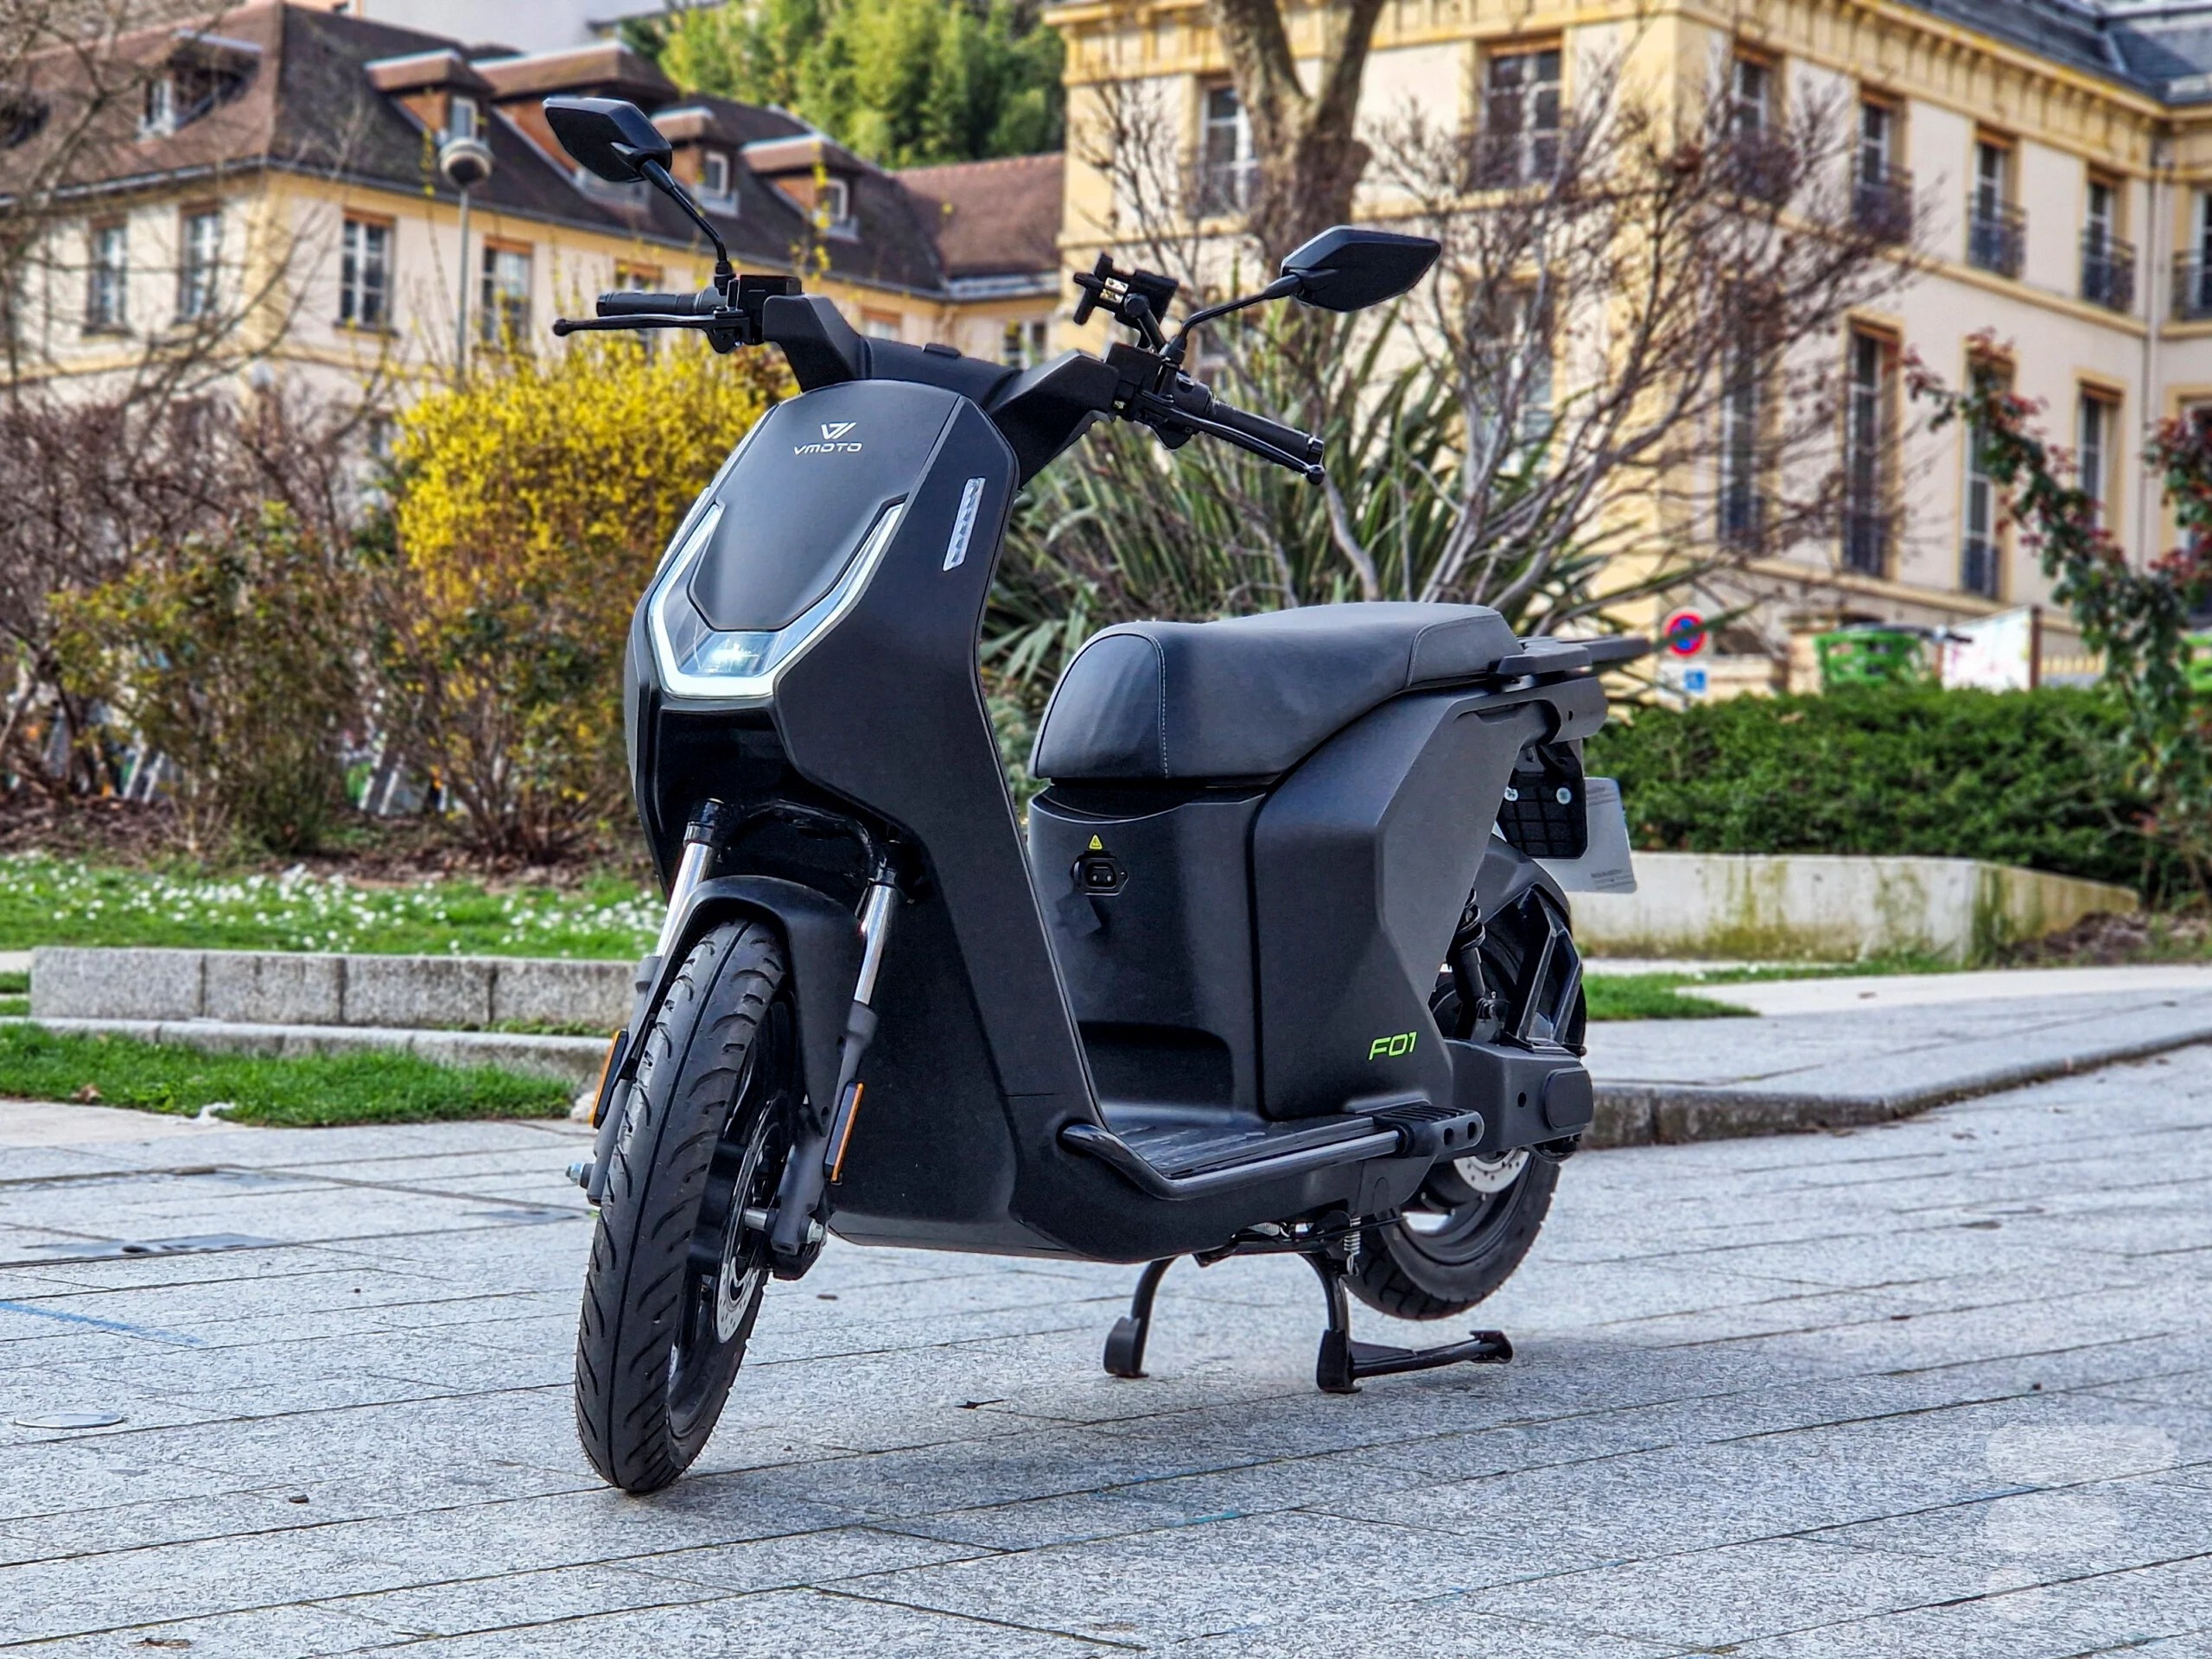 Essai du Vmoto Citi : un scooter électrique urbain ultra agile et maniable